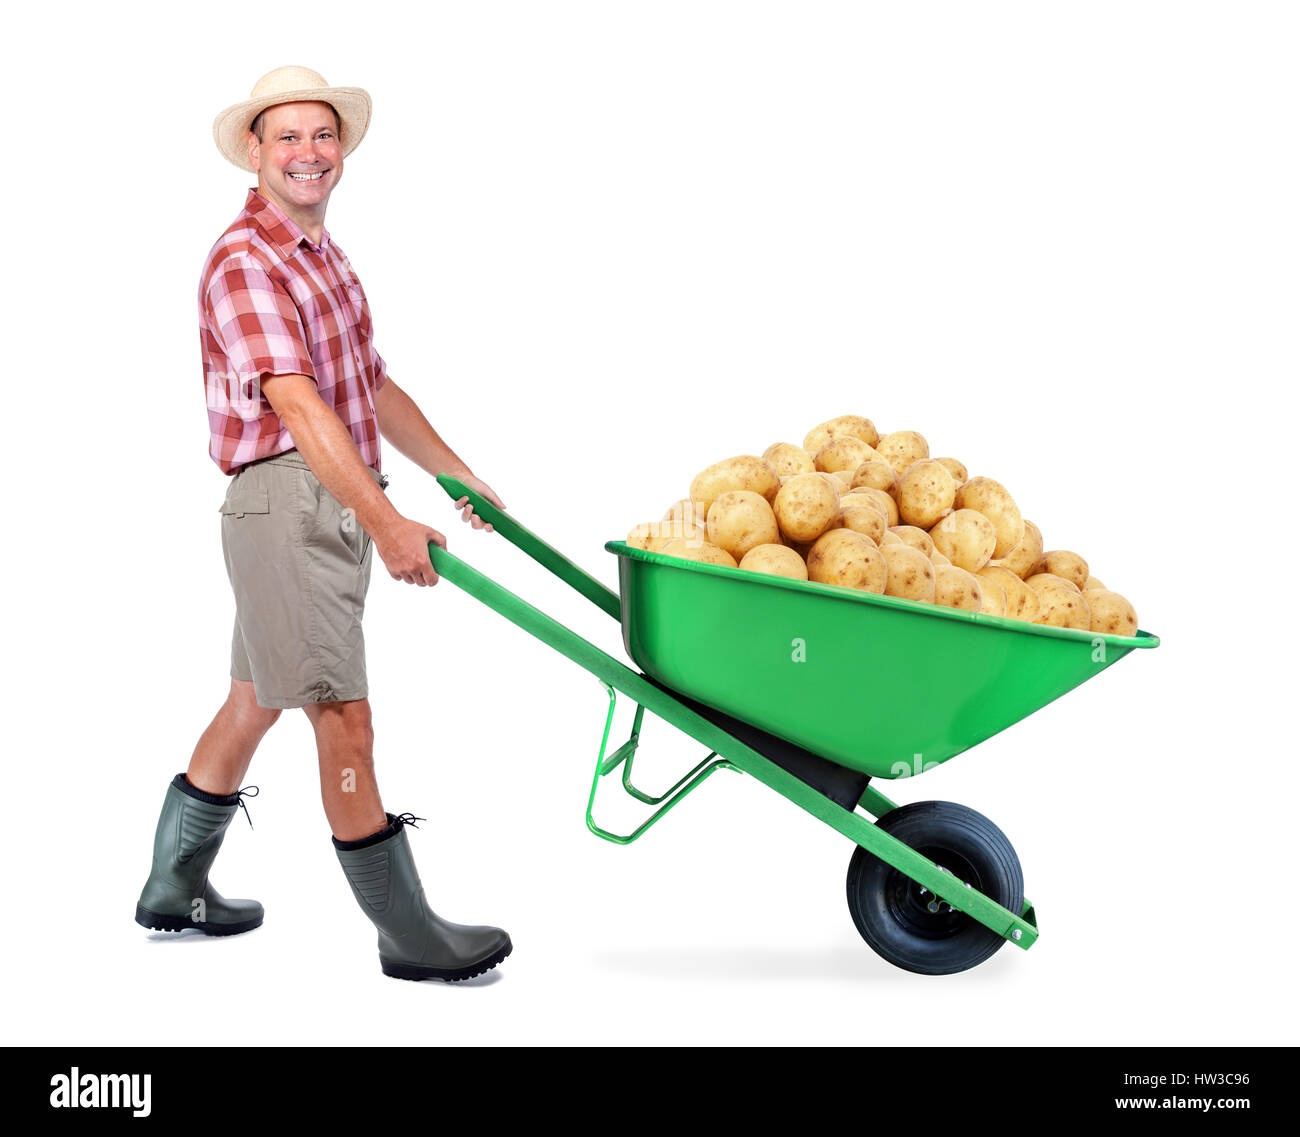 Jardinier joyeux portant un tas de grosse pomme de terre. Un homme poussant une brouette avec de gros tas de pommes de terre. Le succès de la production légumière agriculteur. Banque D'Images